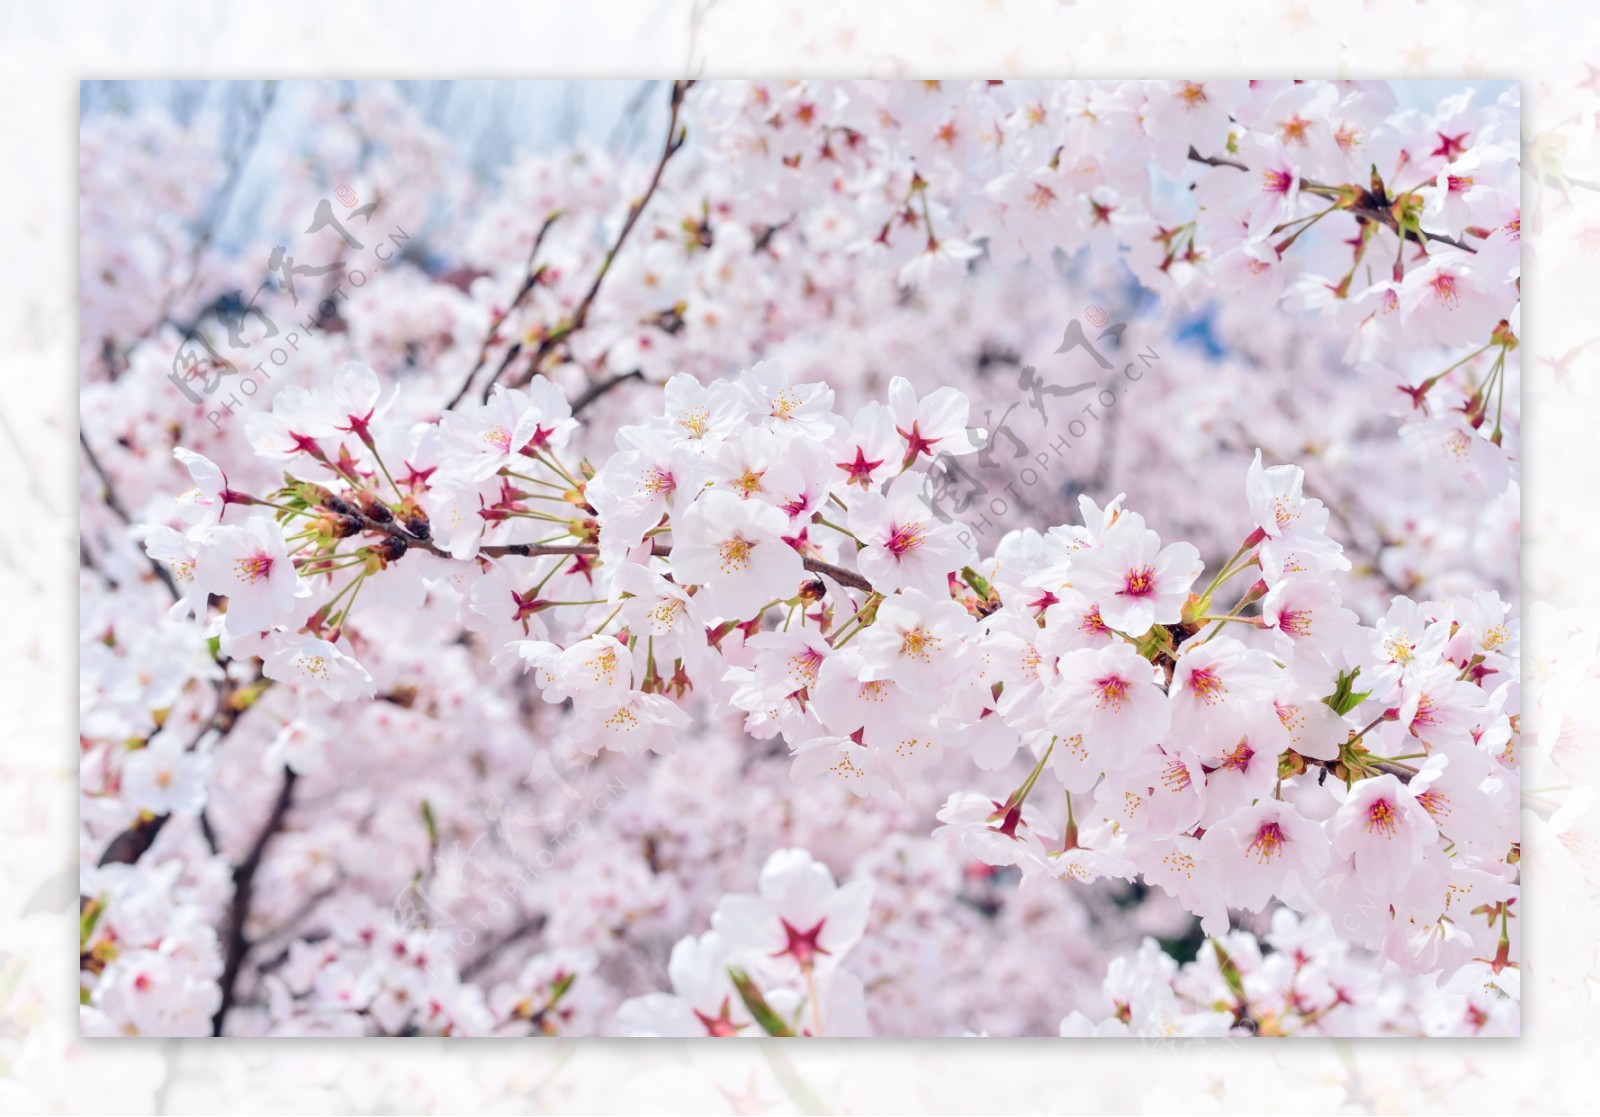 日本樱花盛开